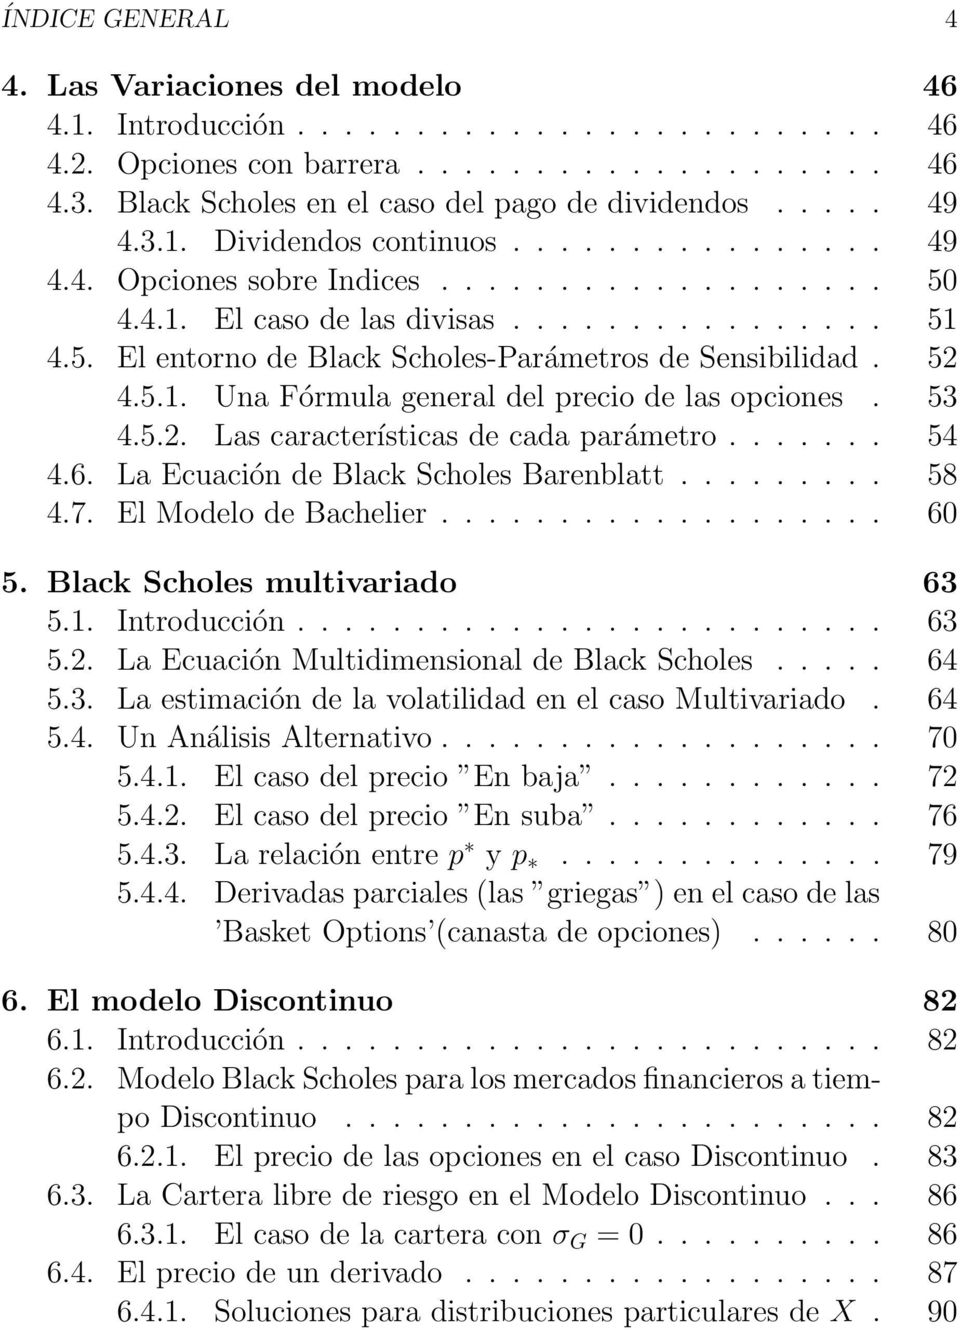 52 4.5.1. Una Fórmula general del precio de las opciones. 53 4.5.2. Las características de cada parámetro....... 54 4.6. La Ecuación de Black Scholes Barenblatt......... 58 4.7.